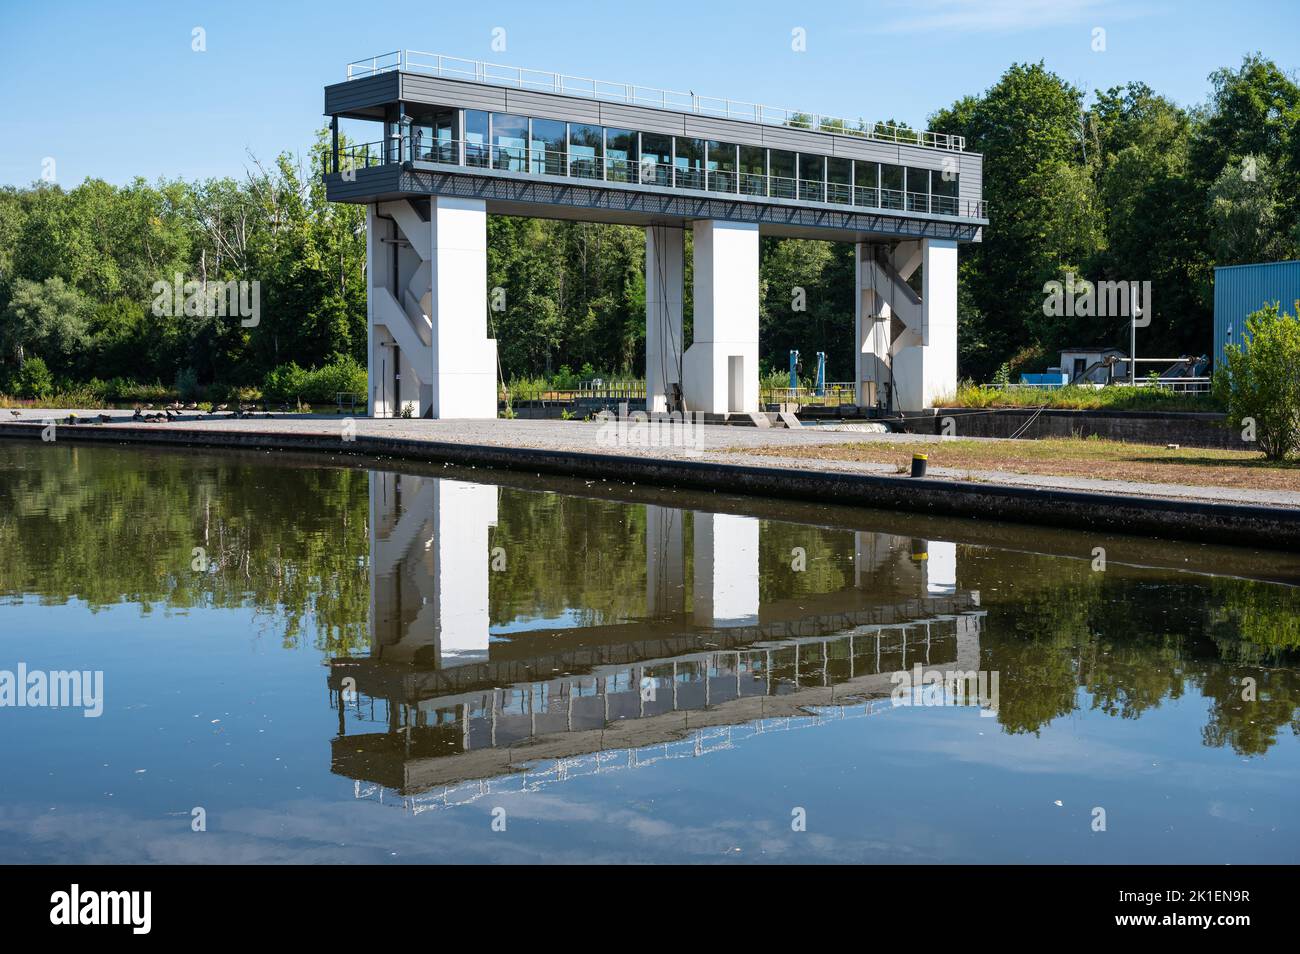 Mornimont, Wallon Region, Belgium, 07 29 2022 - The sluice bridge reflecting in the water of the River Sambre Stock Photo